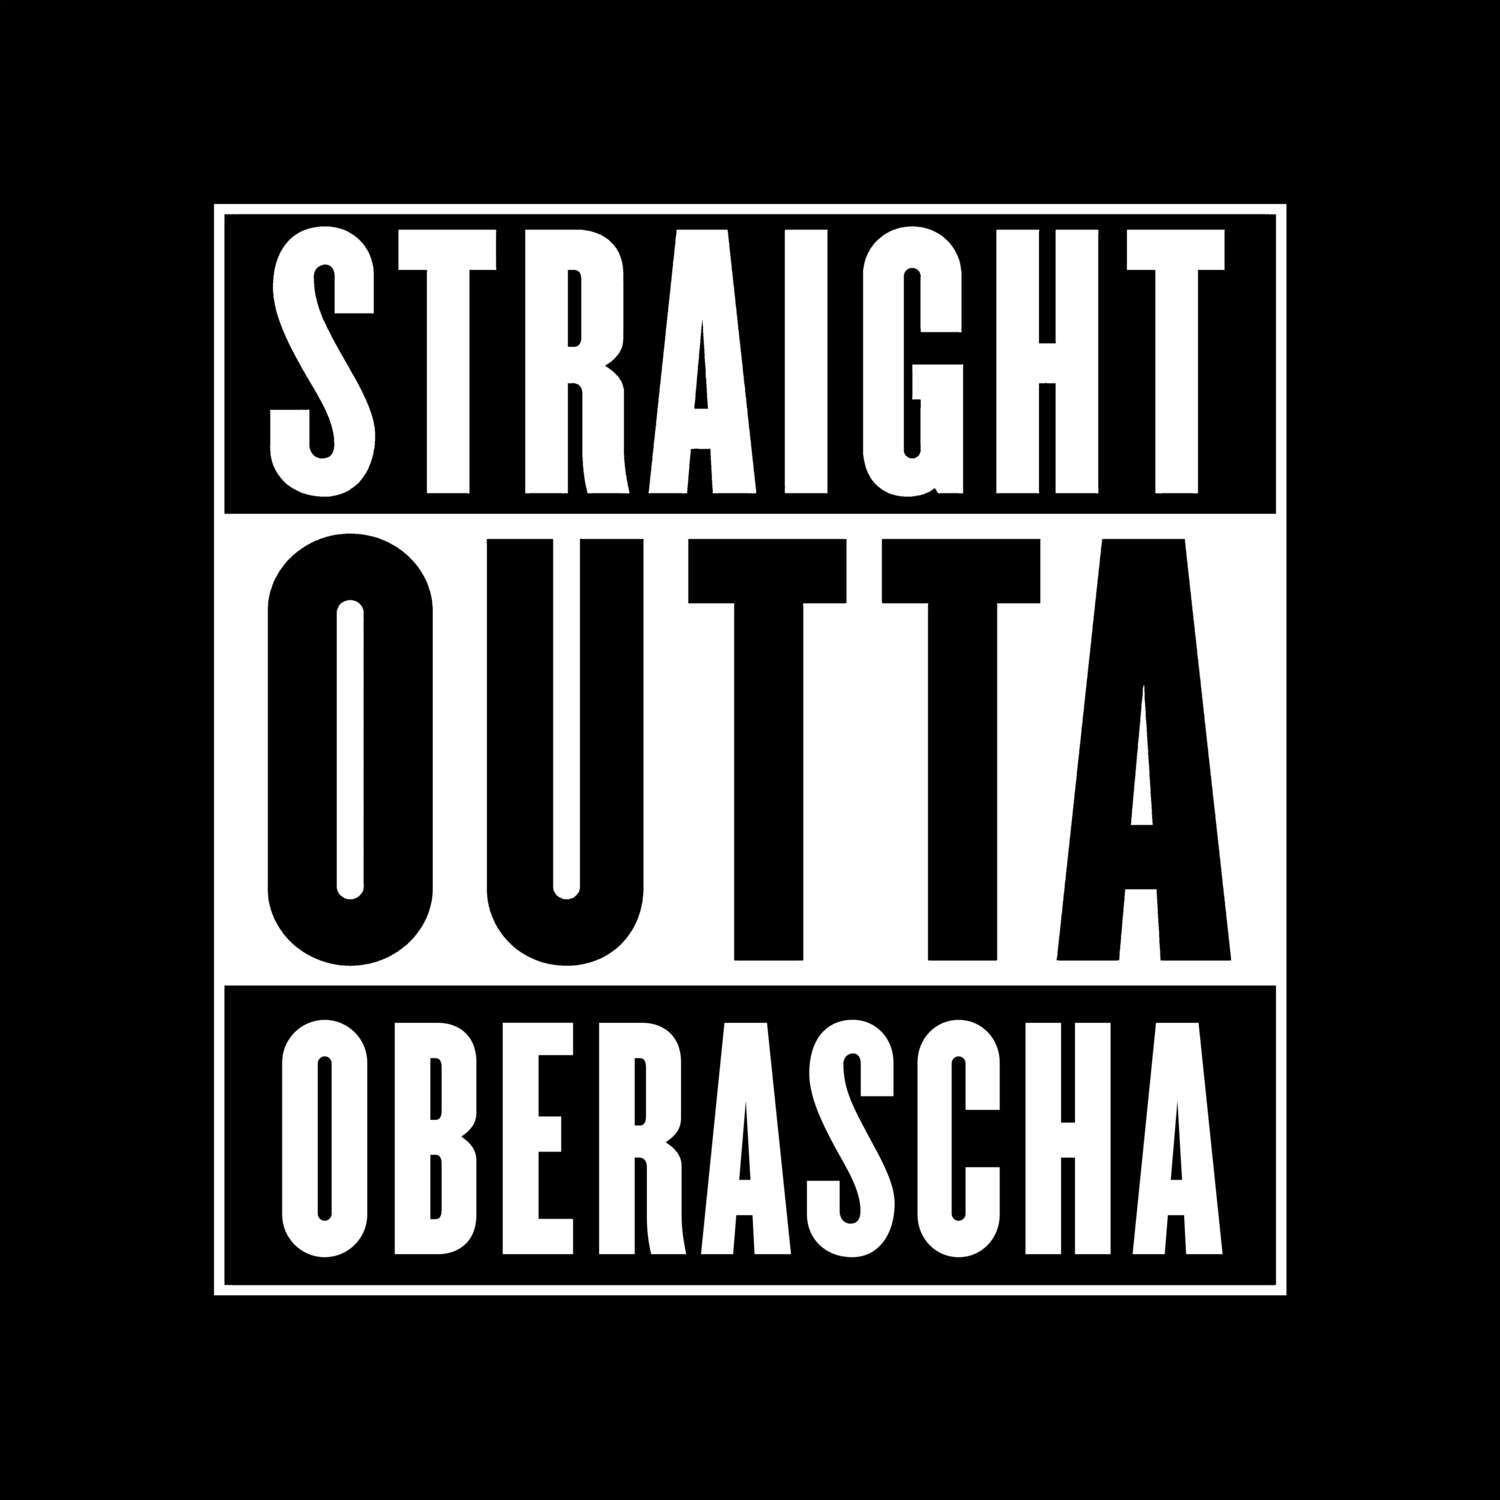 Oberascha T-Shirt »Straight Outta«